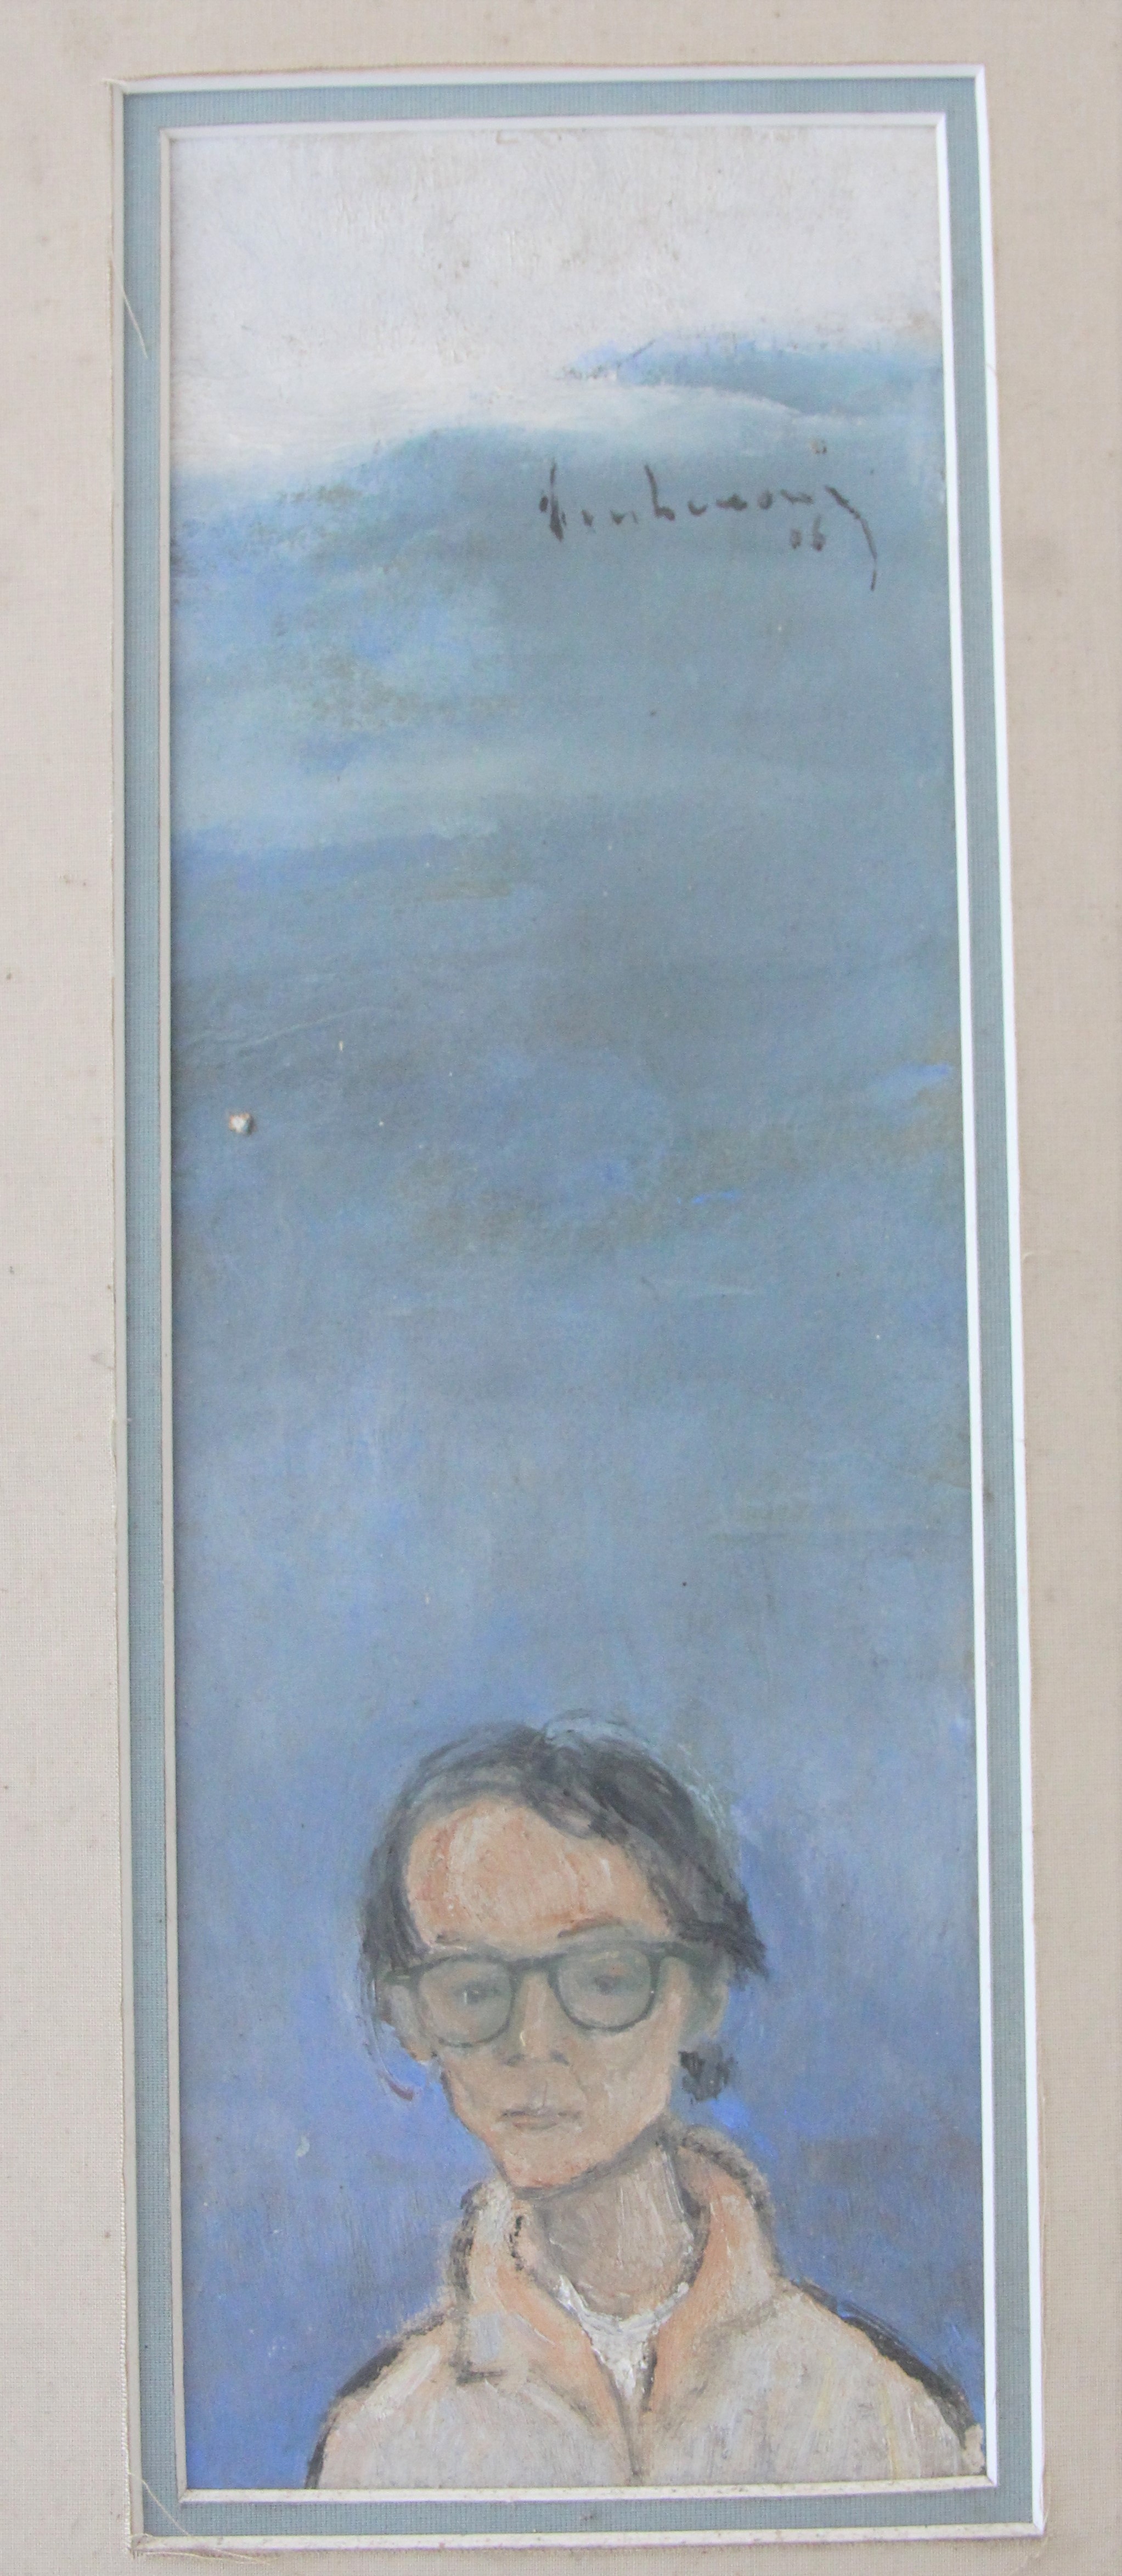 Tranh Đinh Cường vẽ bạn thân Trịnh Công Sơn được trao tặng Bảo tàng Huế - 2